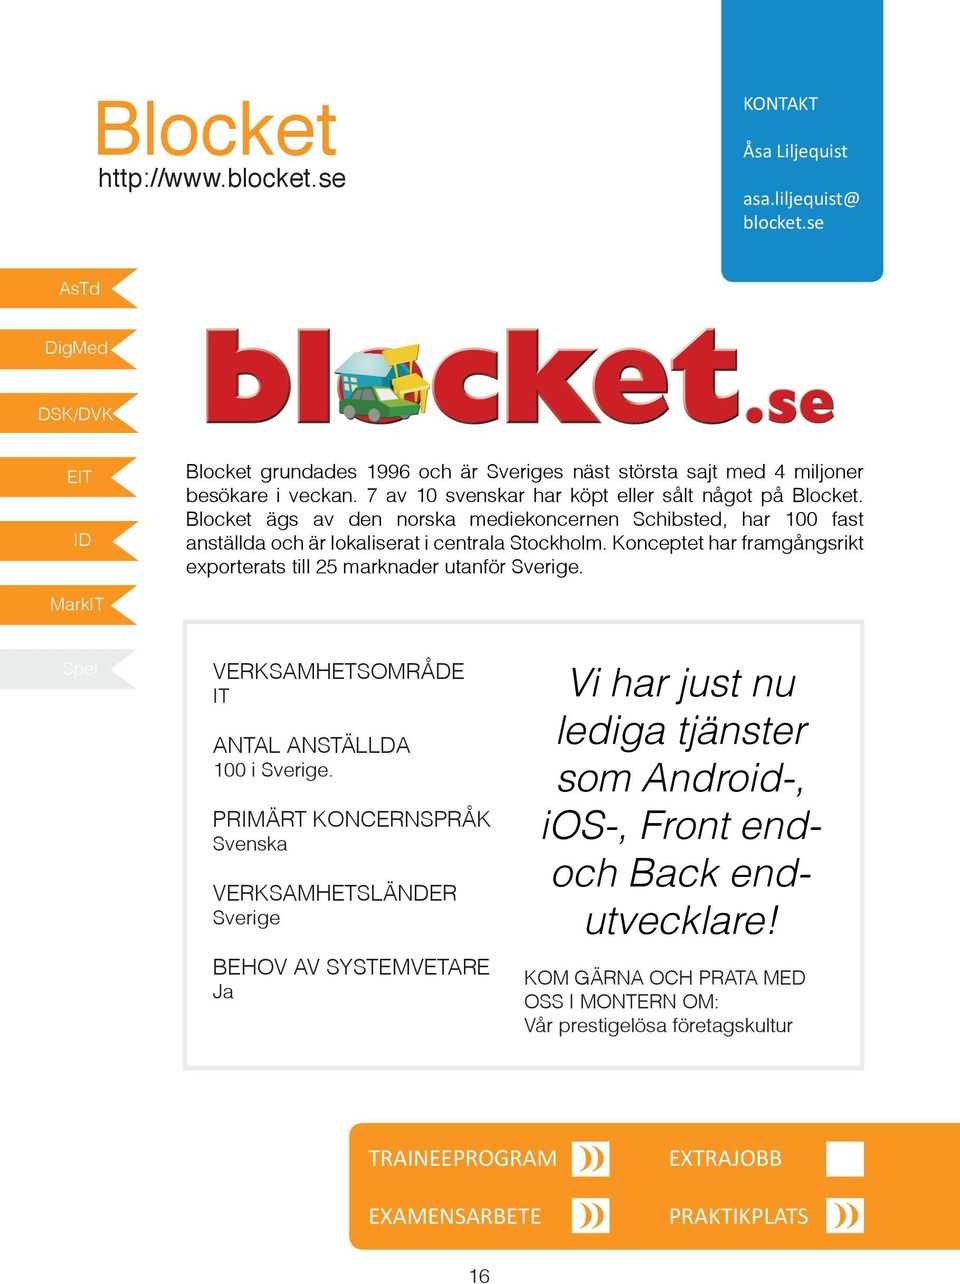 Blocket ägs av den norska mediekoncernen Schibsted, har 100 fast anställda och är lokaliserat i centrala Stockholm.